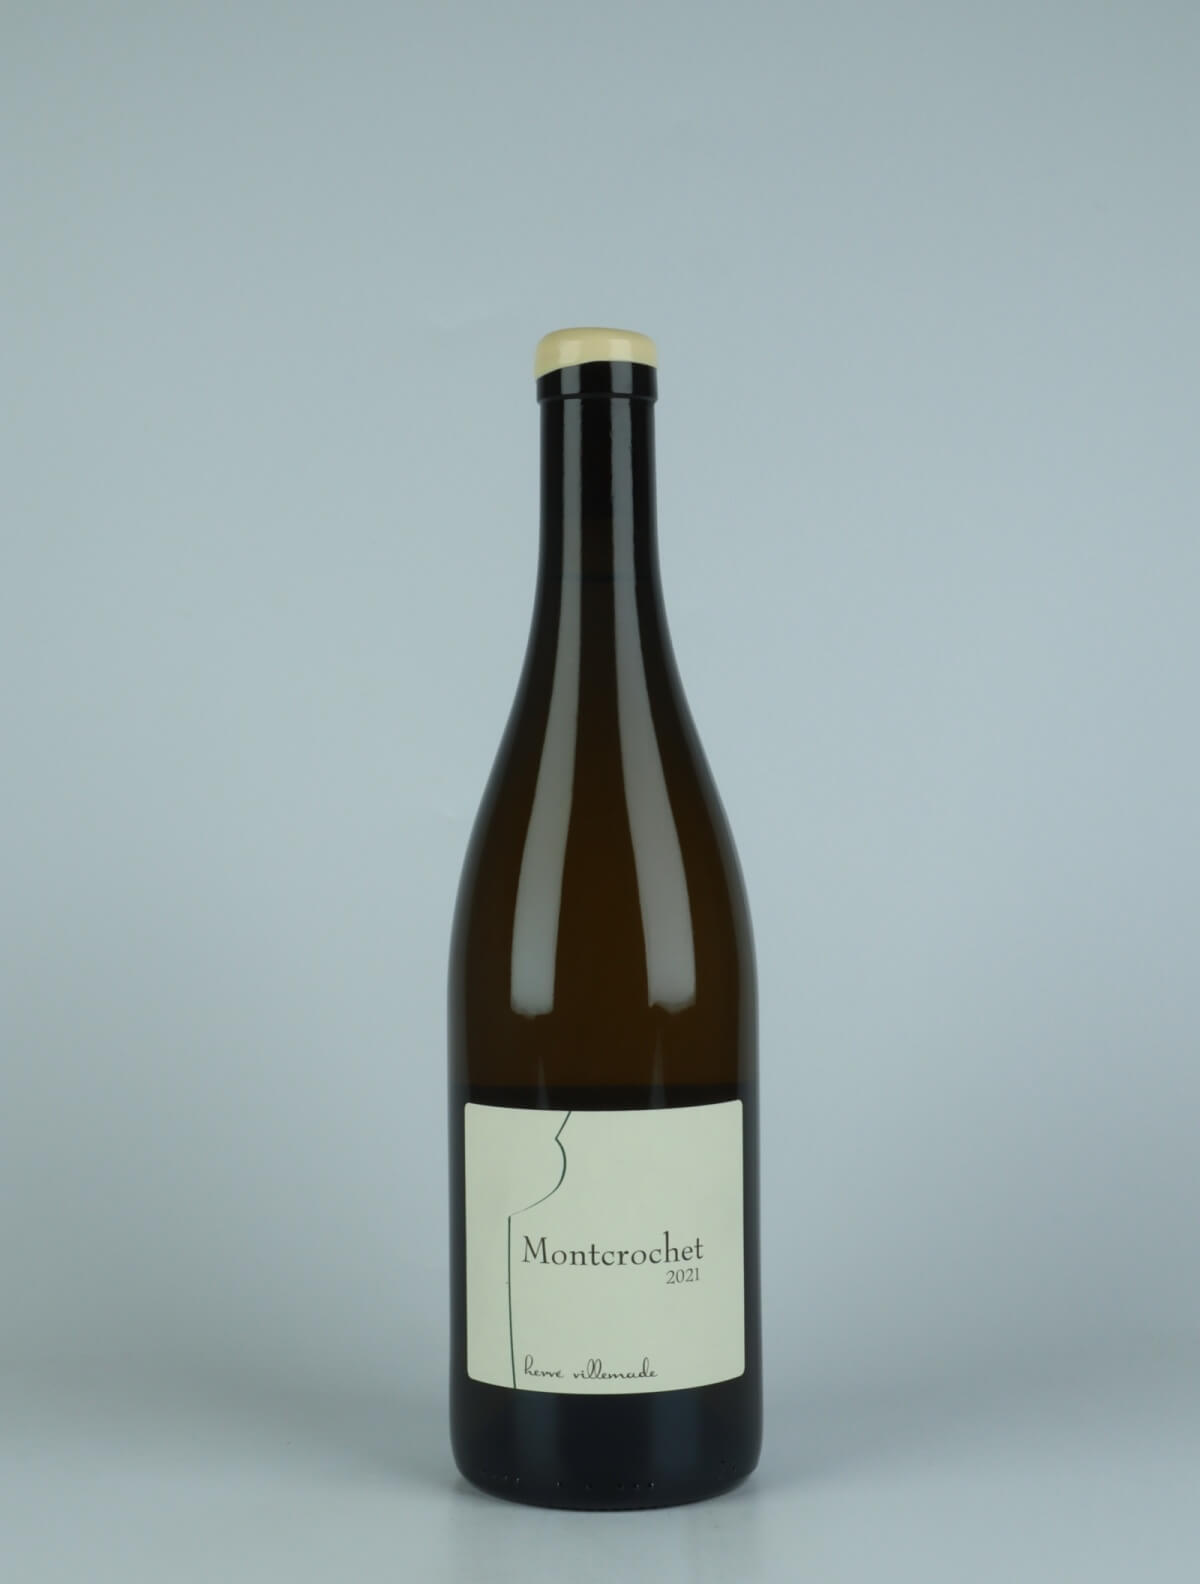 En flaske 2021 Cheverny Blanc - Montcrochet Hvidvin fra Hervé Villemade, Loire i Frankrig